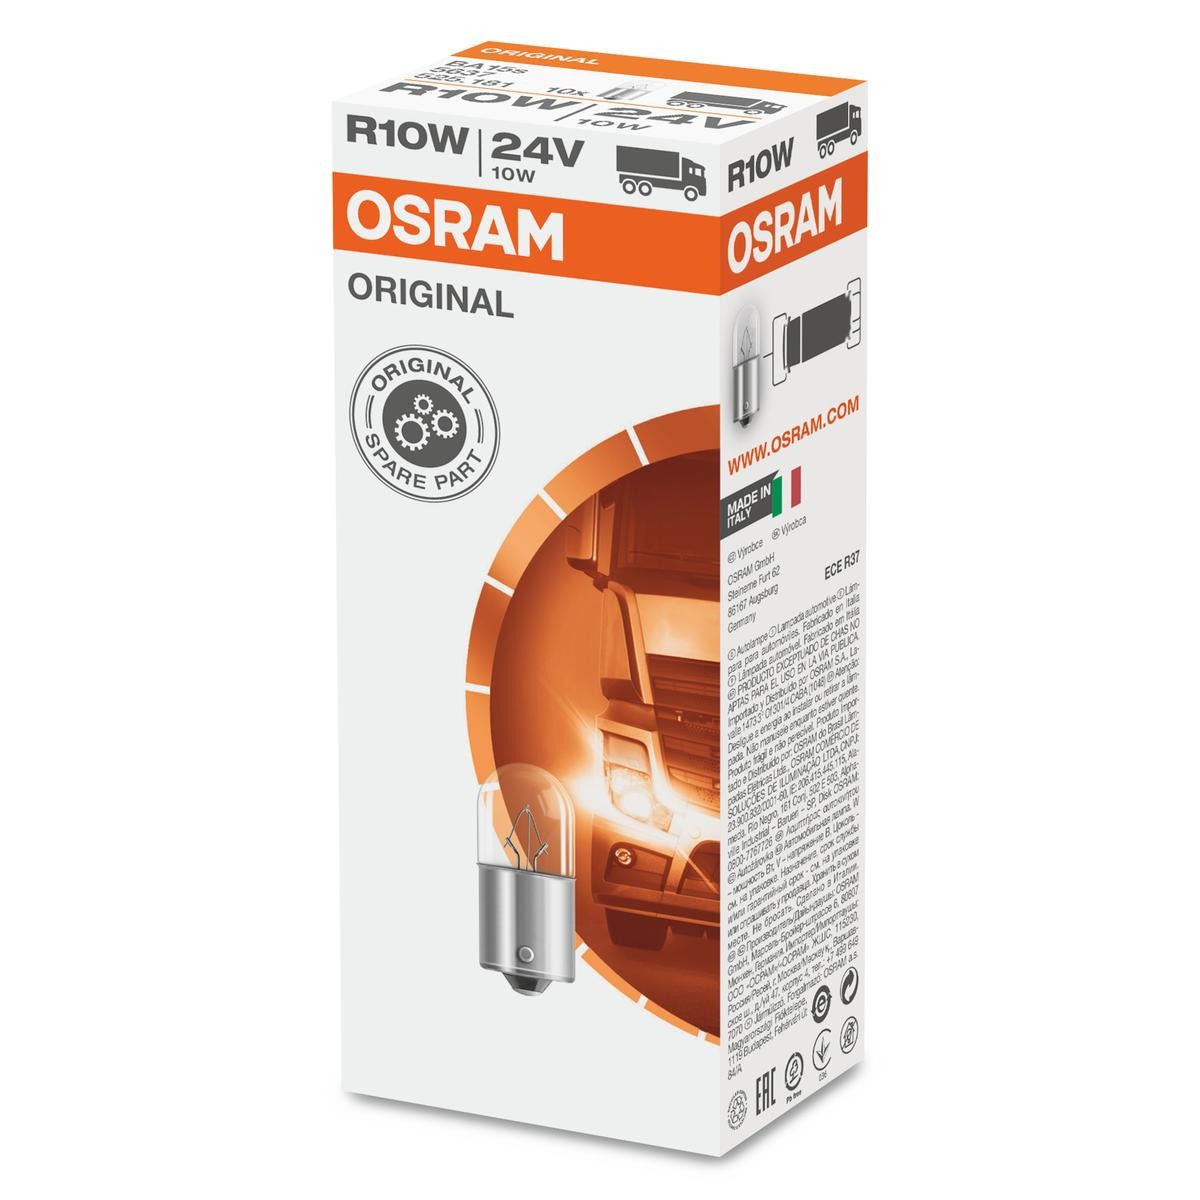 OSRAM ORIGINAL LINE 5637 Bulb, licence plate light 24V 10W, R10W, BA15s